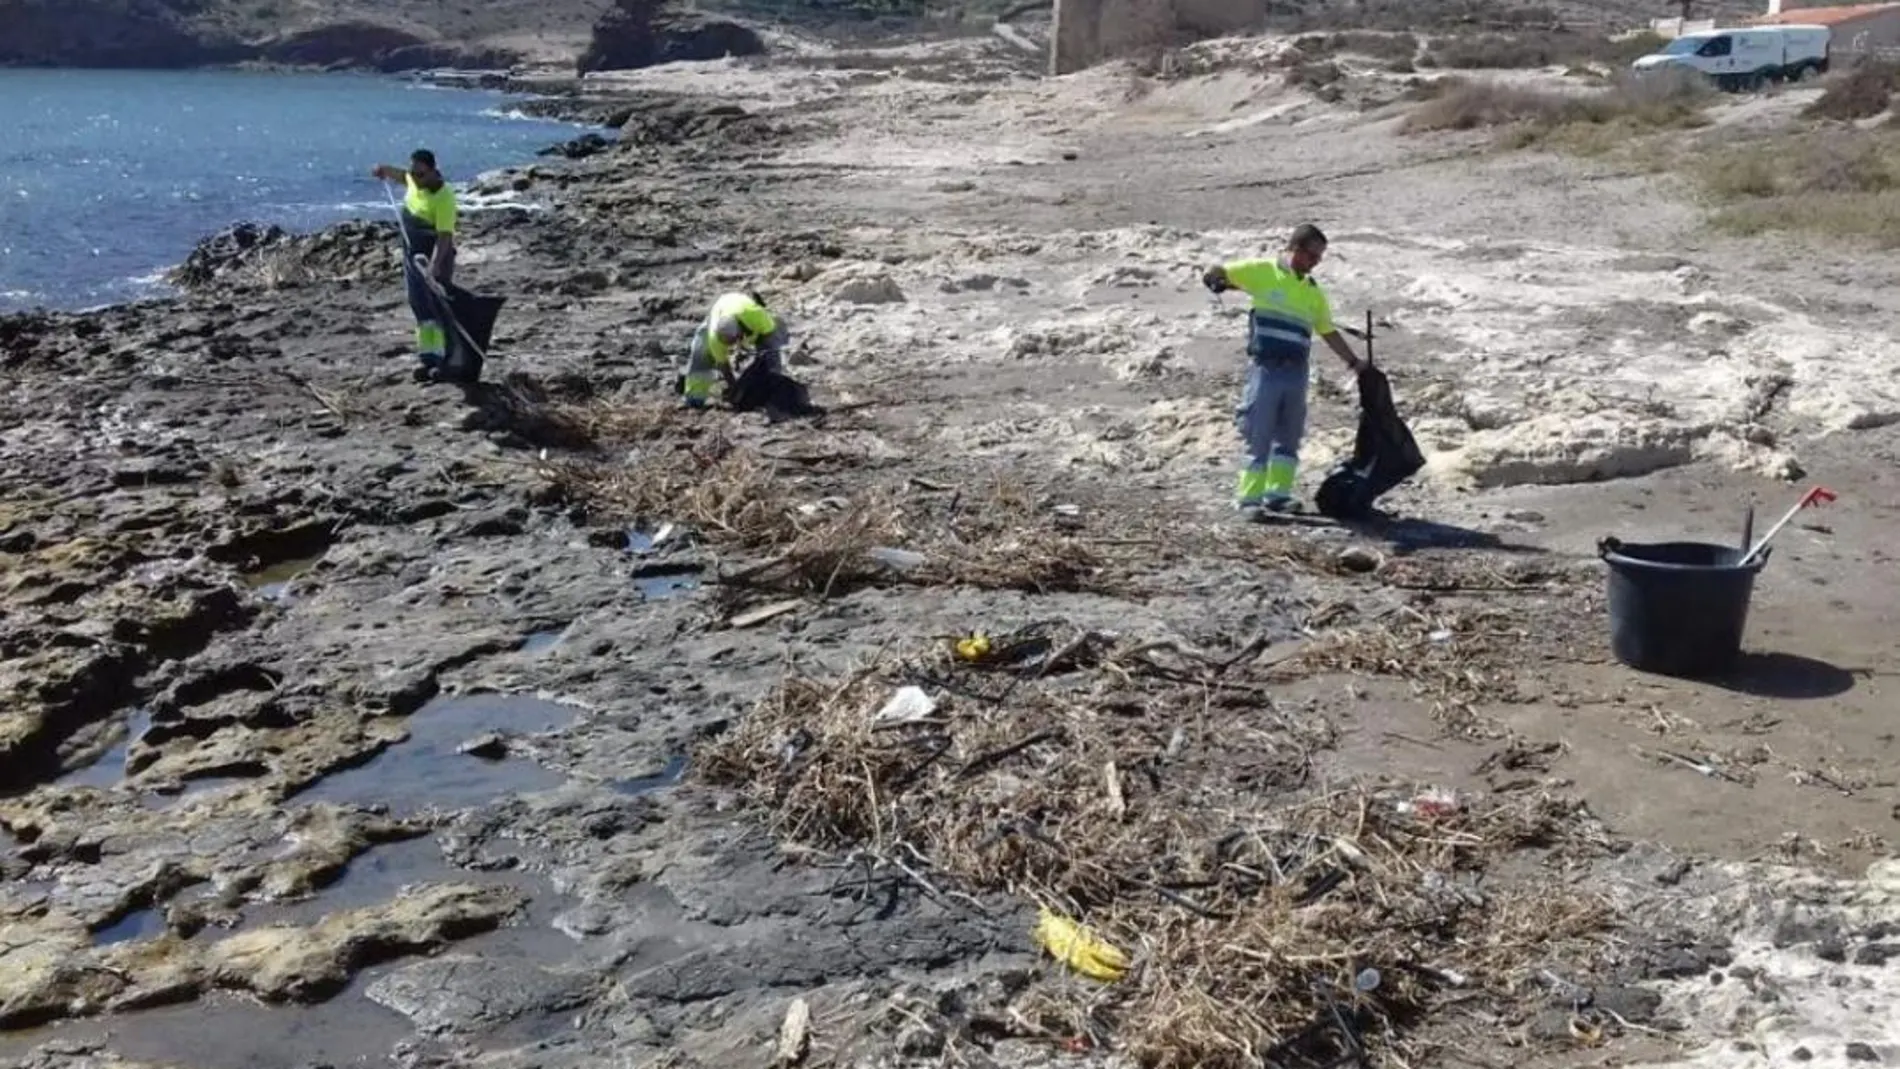 Las brigadas de limpieza de Medio Ambiente recogieron durante toda la semana 1.500 kilos de basura, plásticos y otros residuos arrastrados a las playas por las lluvias de la semana pasada